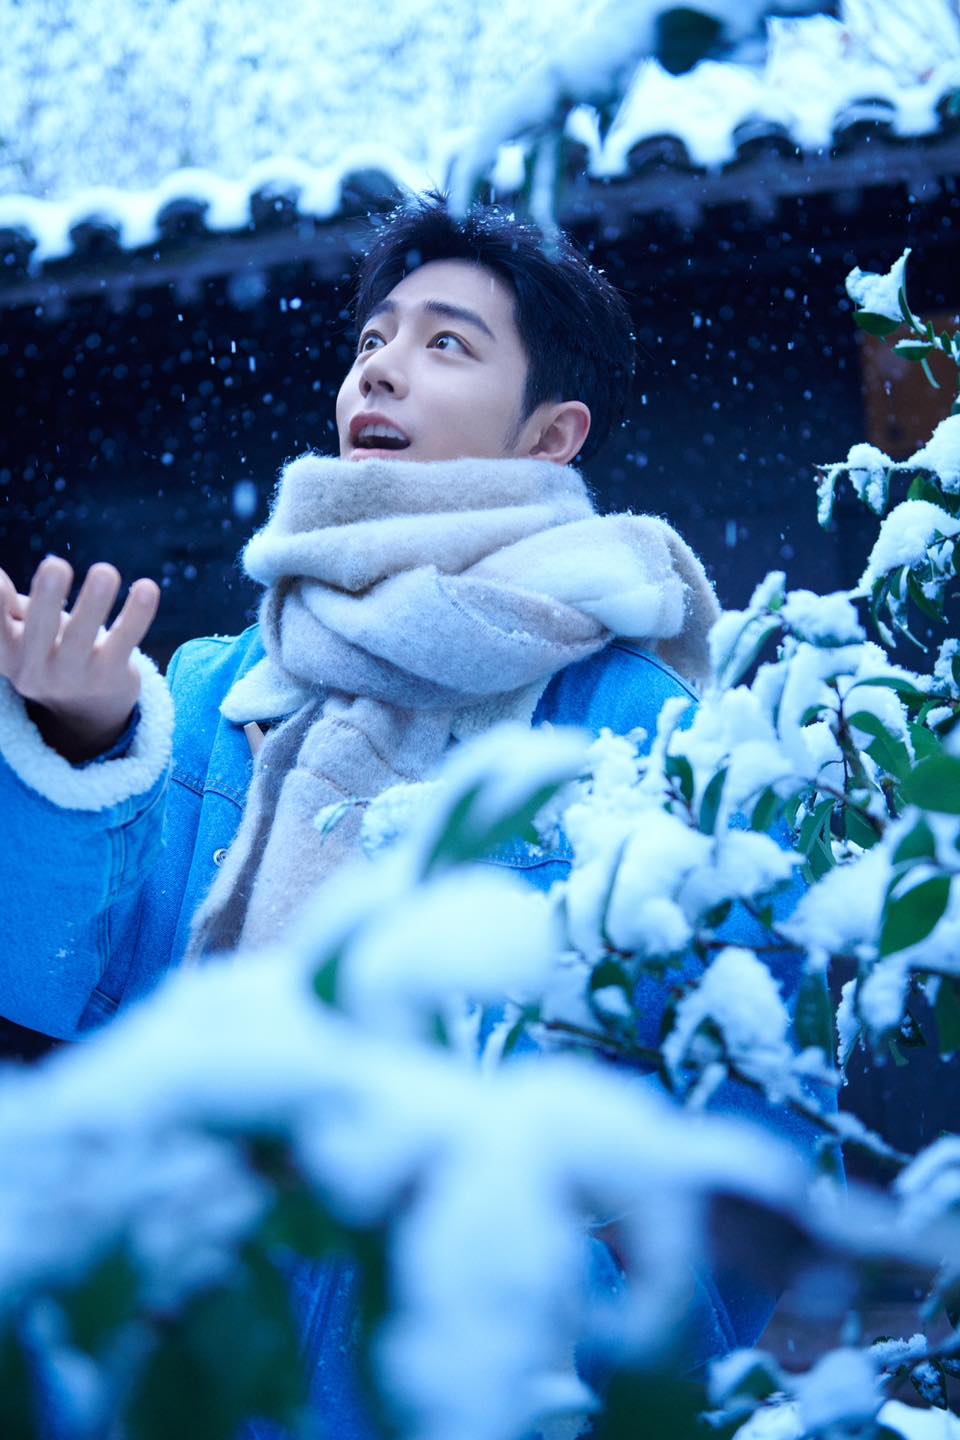 Tiêu Chiến hóa 'bạn trai mùa đông' trong loạt ảnh dưới tuyết 'hút hồn' người hâm mộ - Ảnh 6